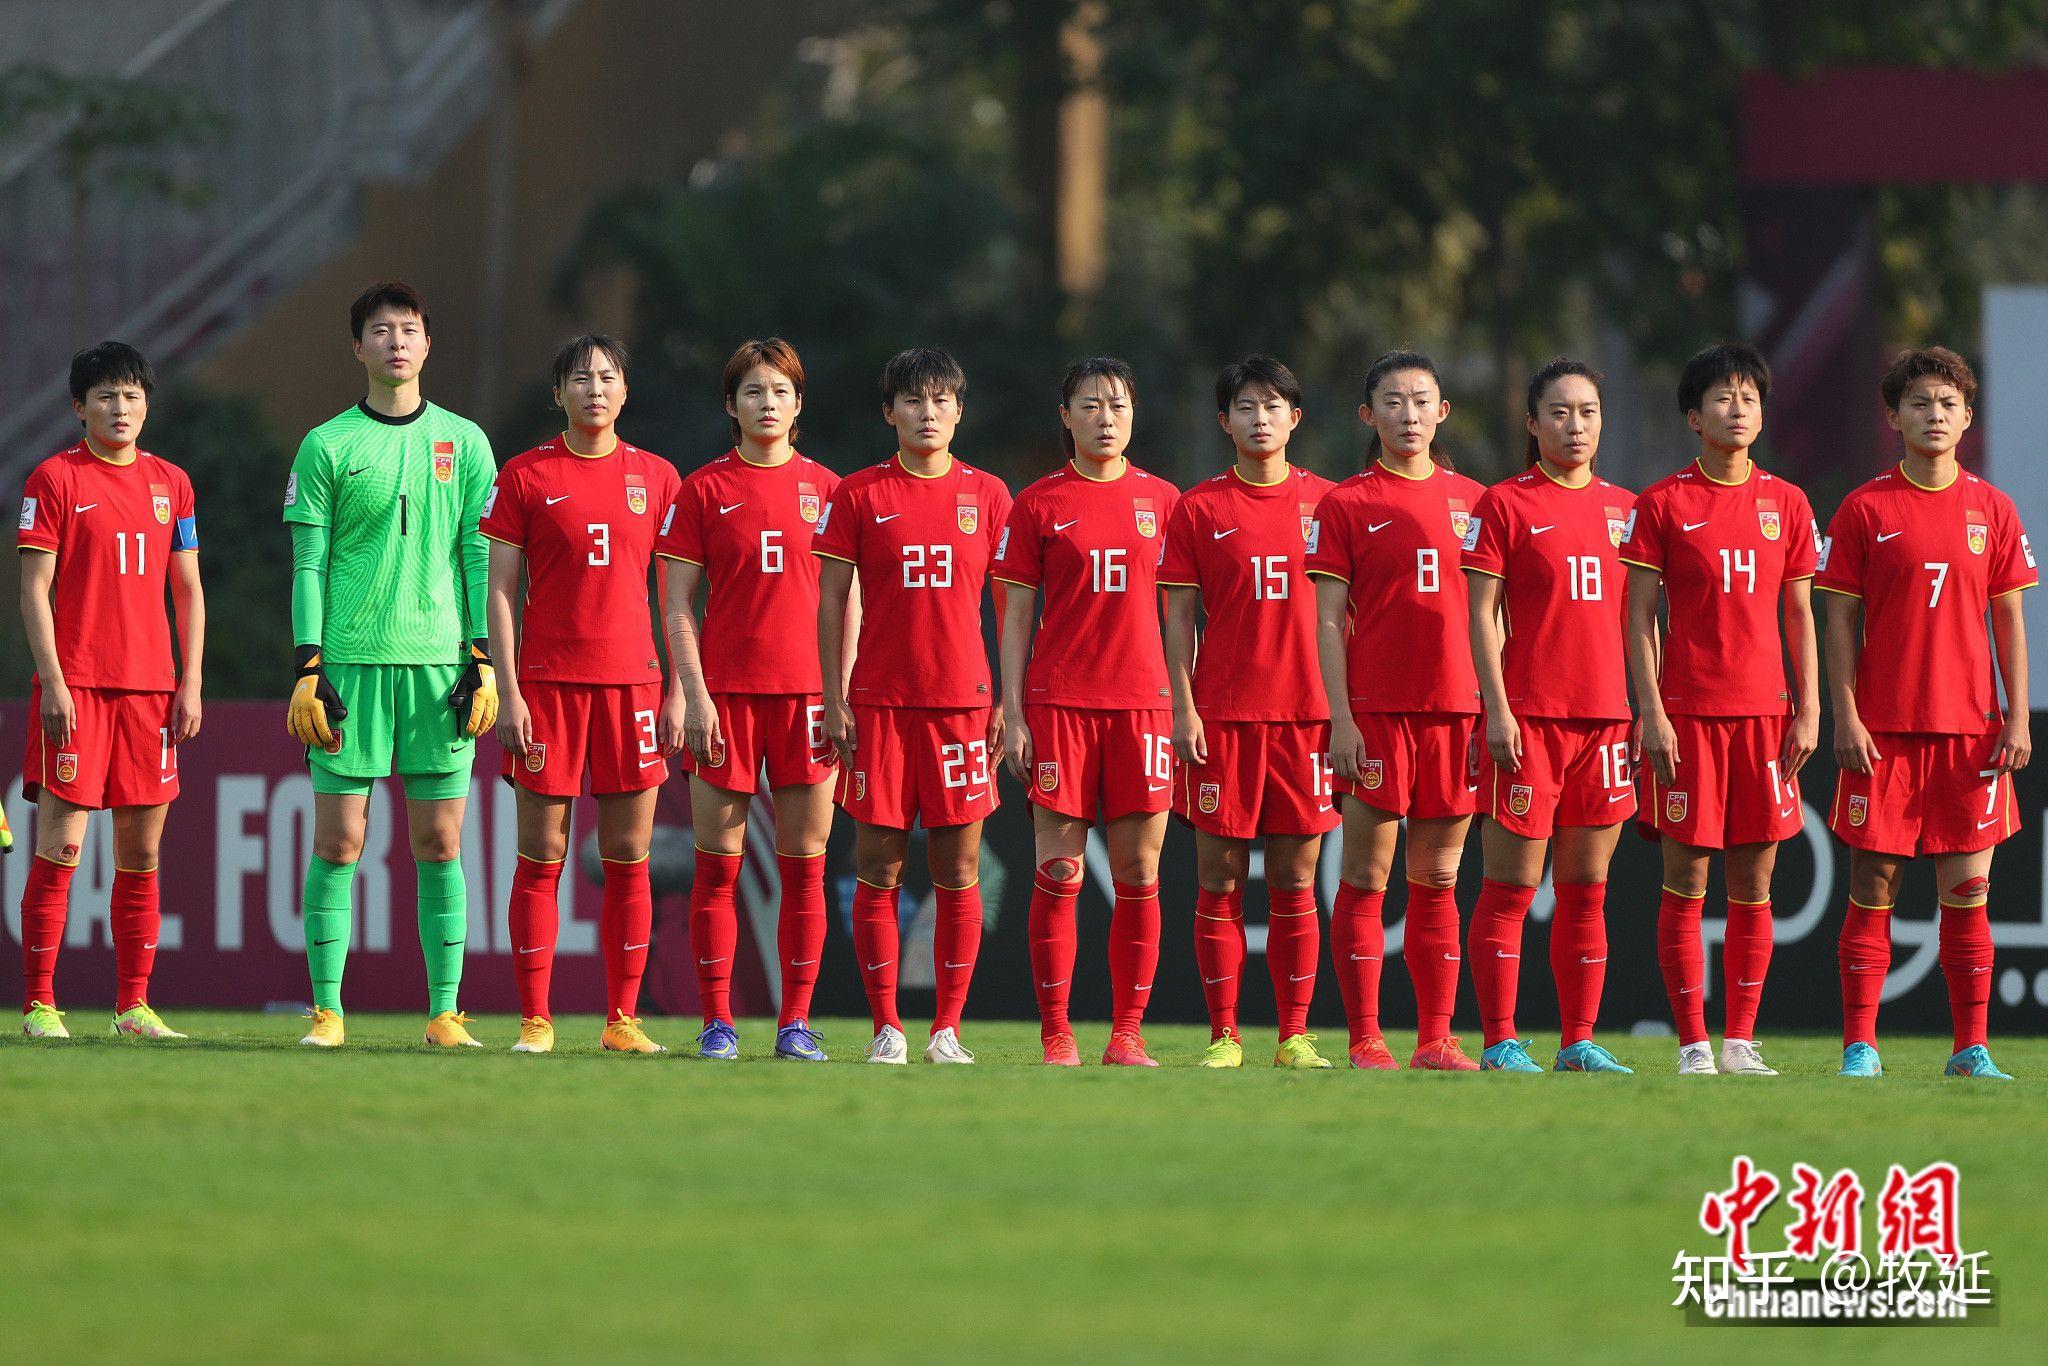 2022 女足亚洲杯决赛中国女足绝地大逆转,3:2 击败韩国夺冠,如何评价